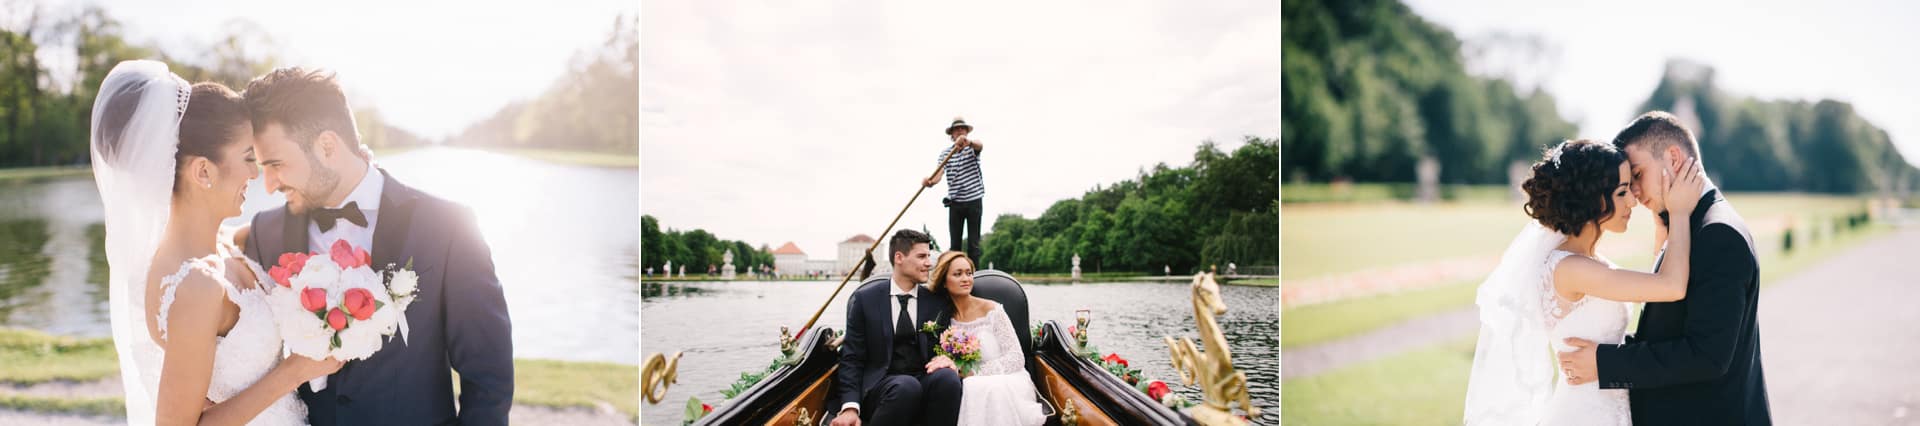 Hochzeitspaar Fotoshooting am Schloss Nymphenburg eines der besten Fotolocations für Hochzeitspaare